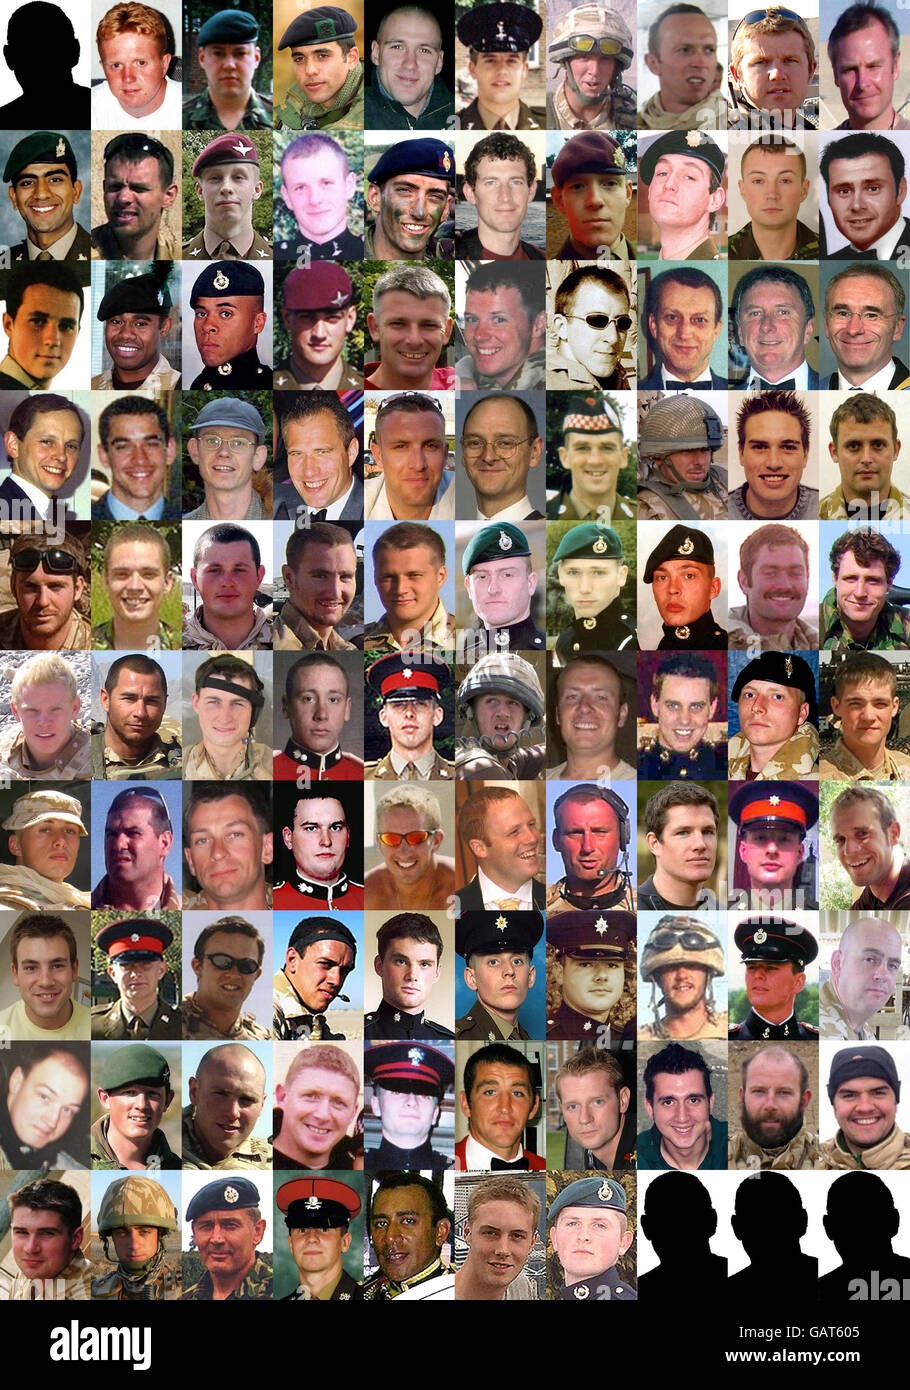 La leyenda completa de esta foto se transmitirá como una historia en el servicio de noticias de PA. Imagen compuesta de los 100 militares británicos muertos durante el conflicto en Afganistán. ... !00 militares muertos en Afganistán ... 08-06-2008 ... Londres ... REINO UNIDO ... Foto de stock